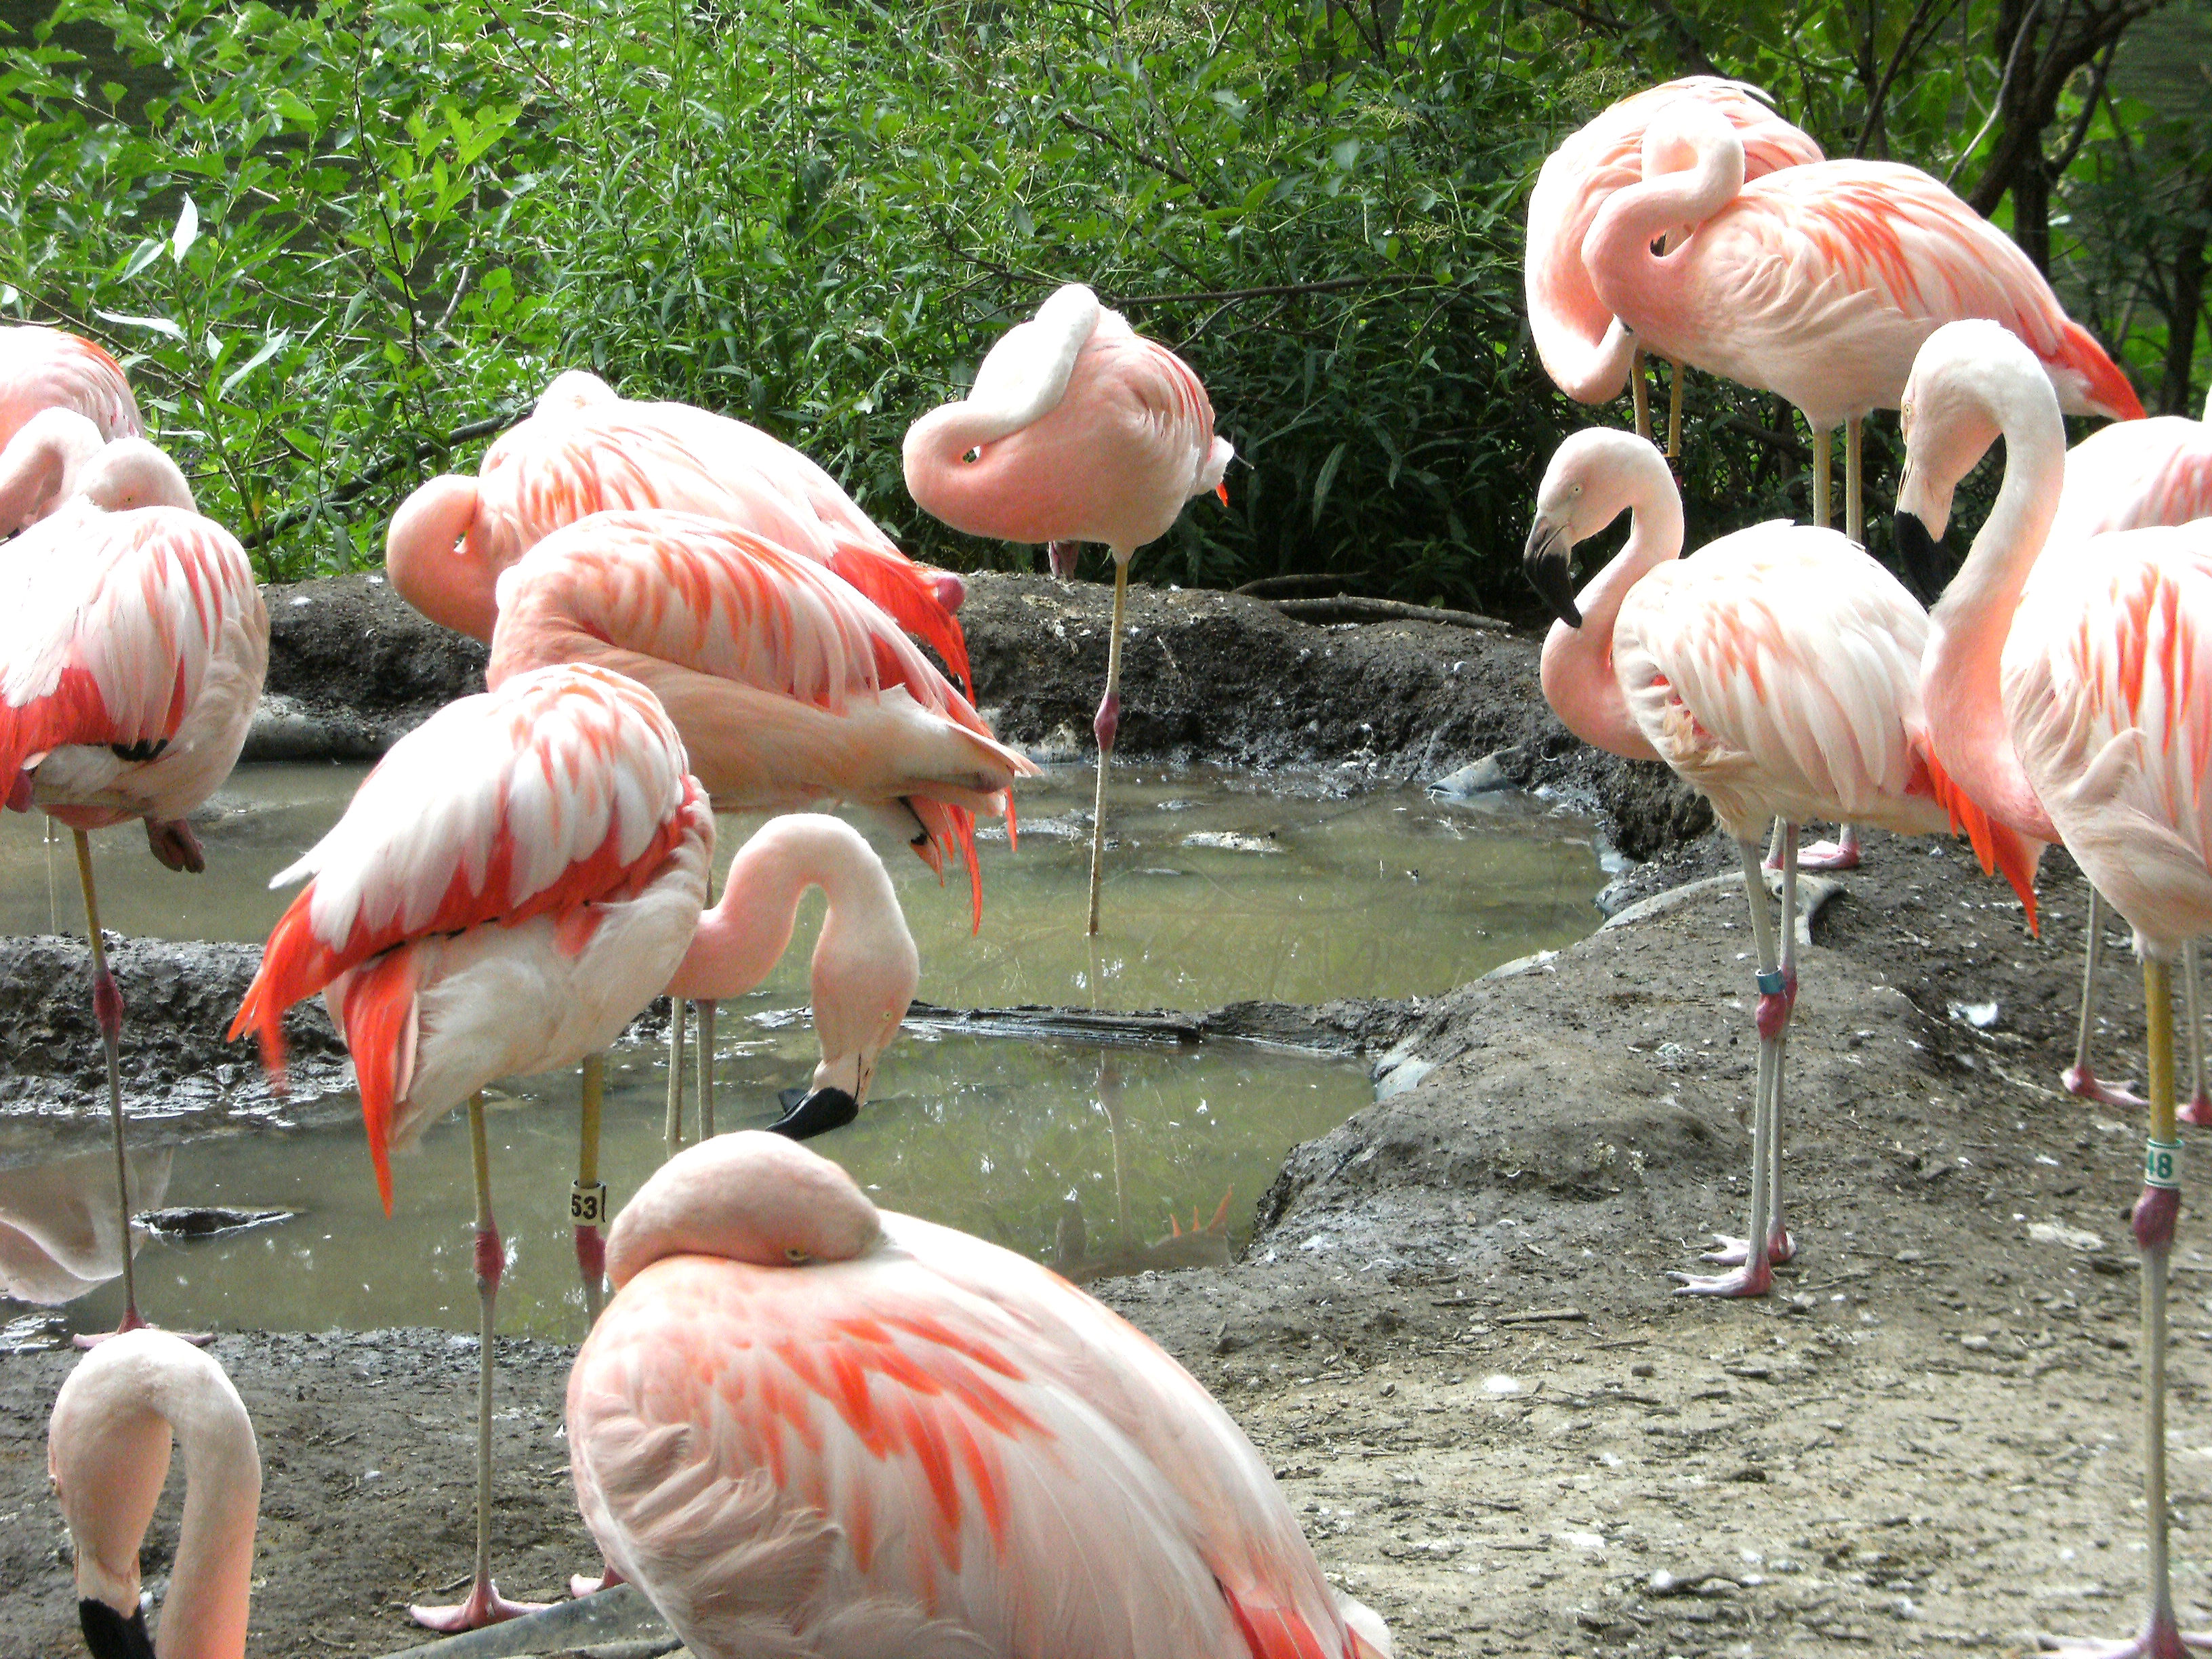 Flamingos gather around water to feed on shrimp